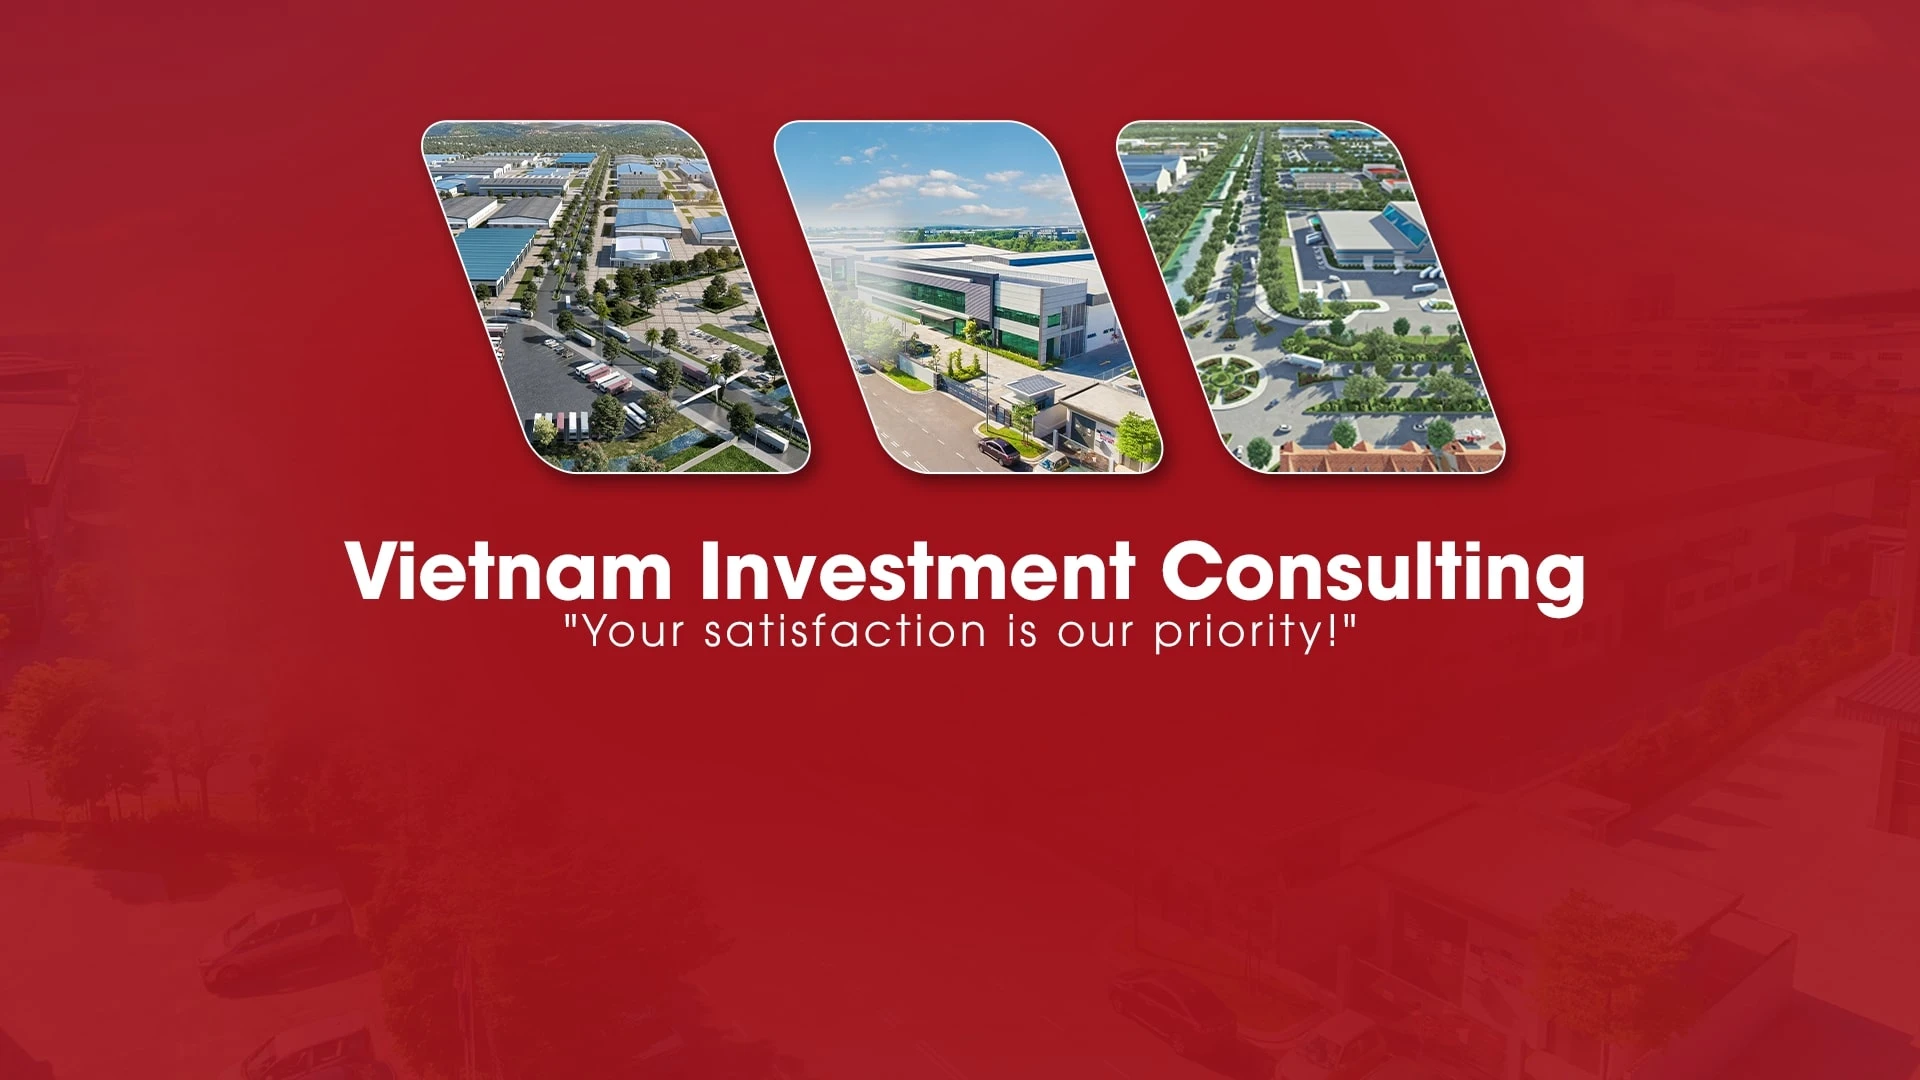 VNIC - VIETNAM INVESTMENT CONSULTING